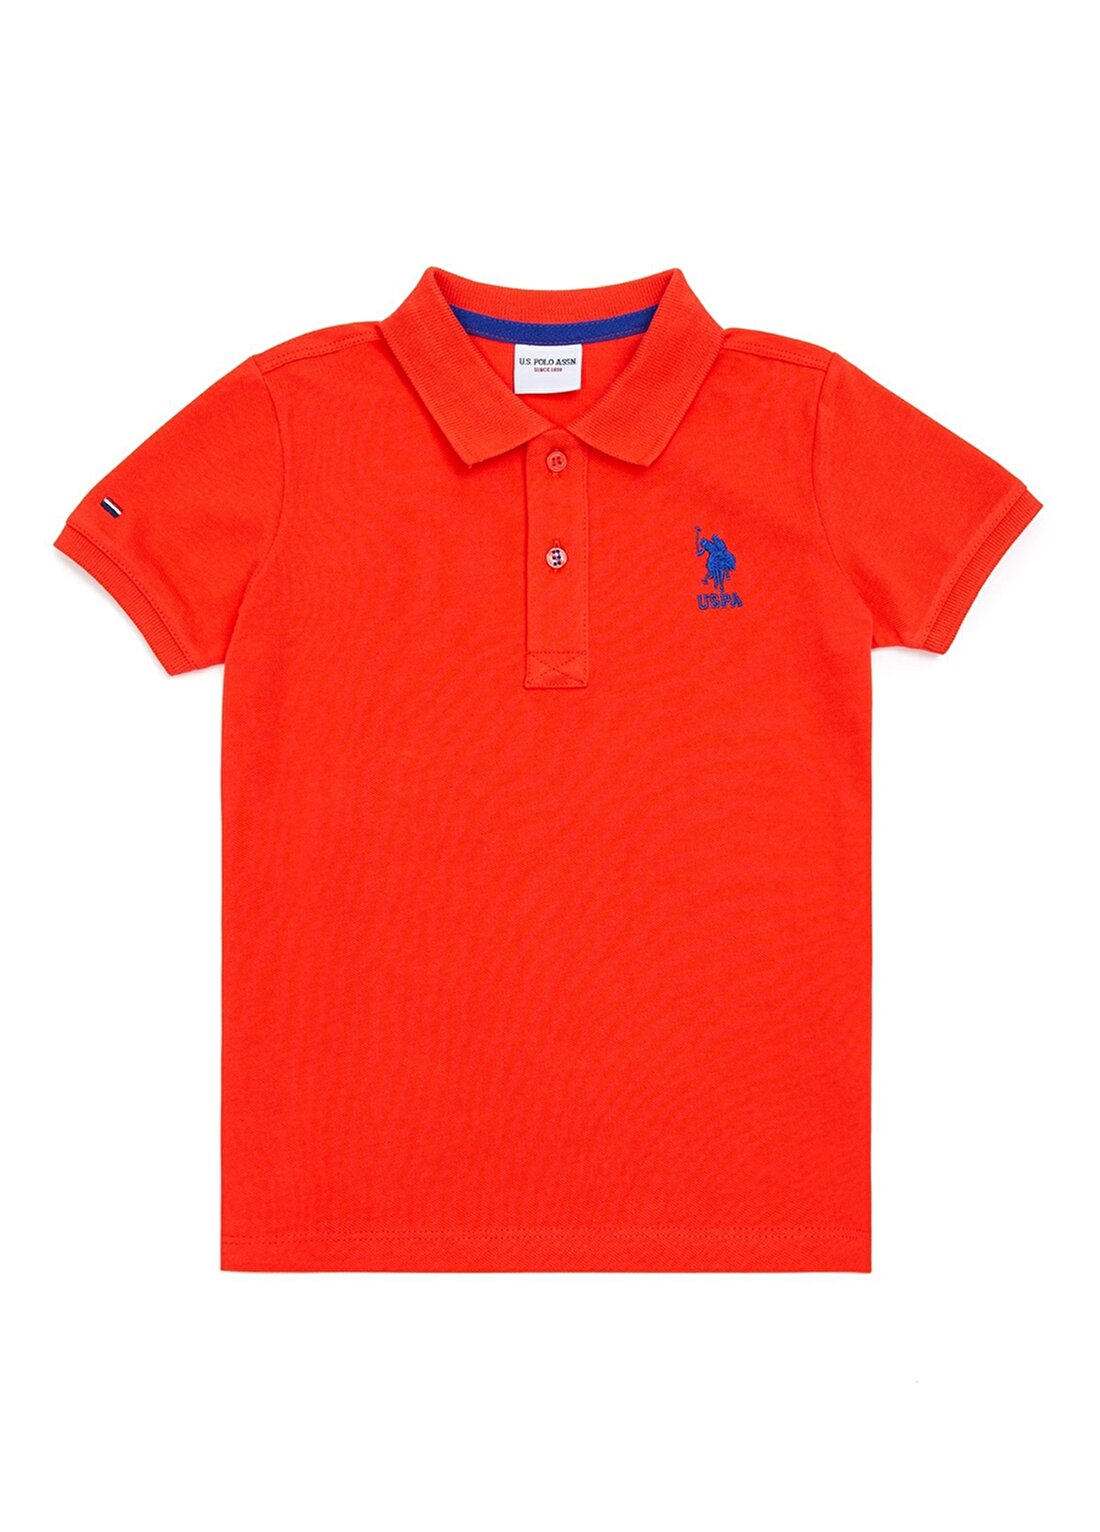 U.S. Polo Assn. Düz Kırmızı Erkek Çocuk Polo T-Shirt TP01IY022 -KIDS